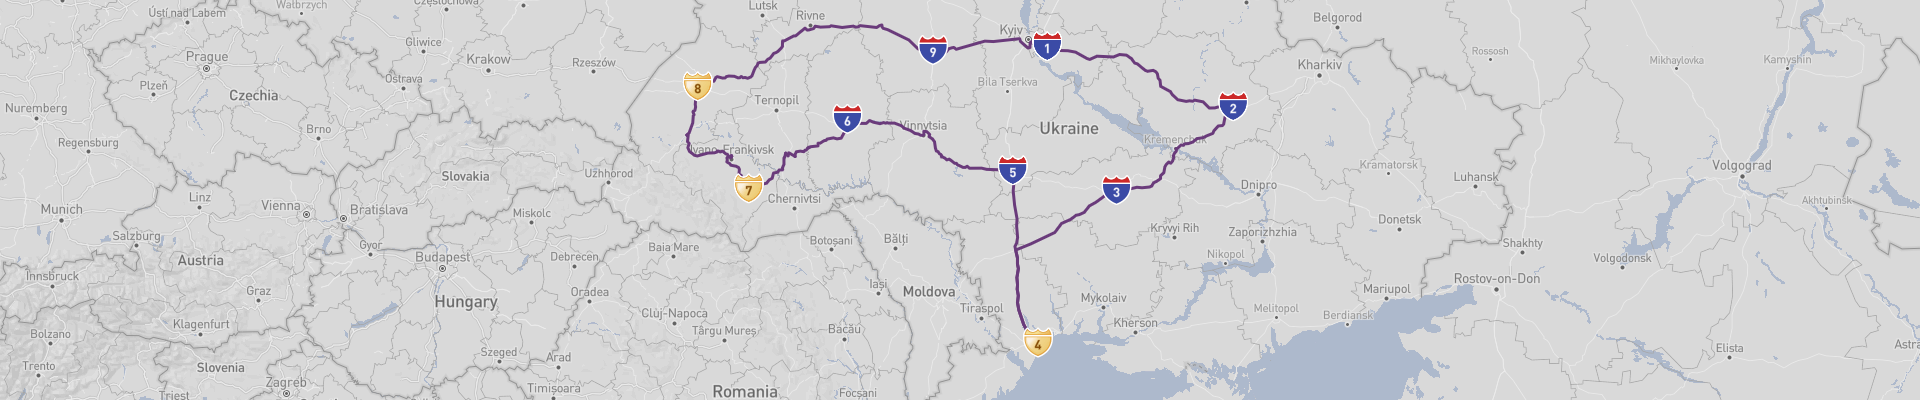 Ukraine Road Trip